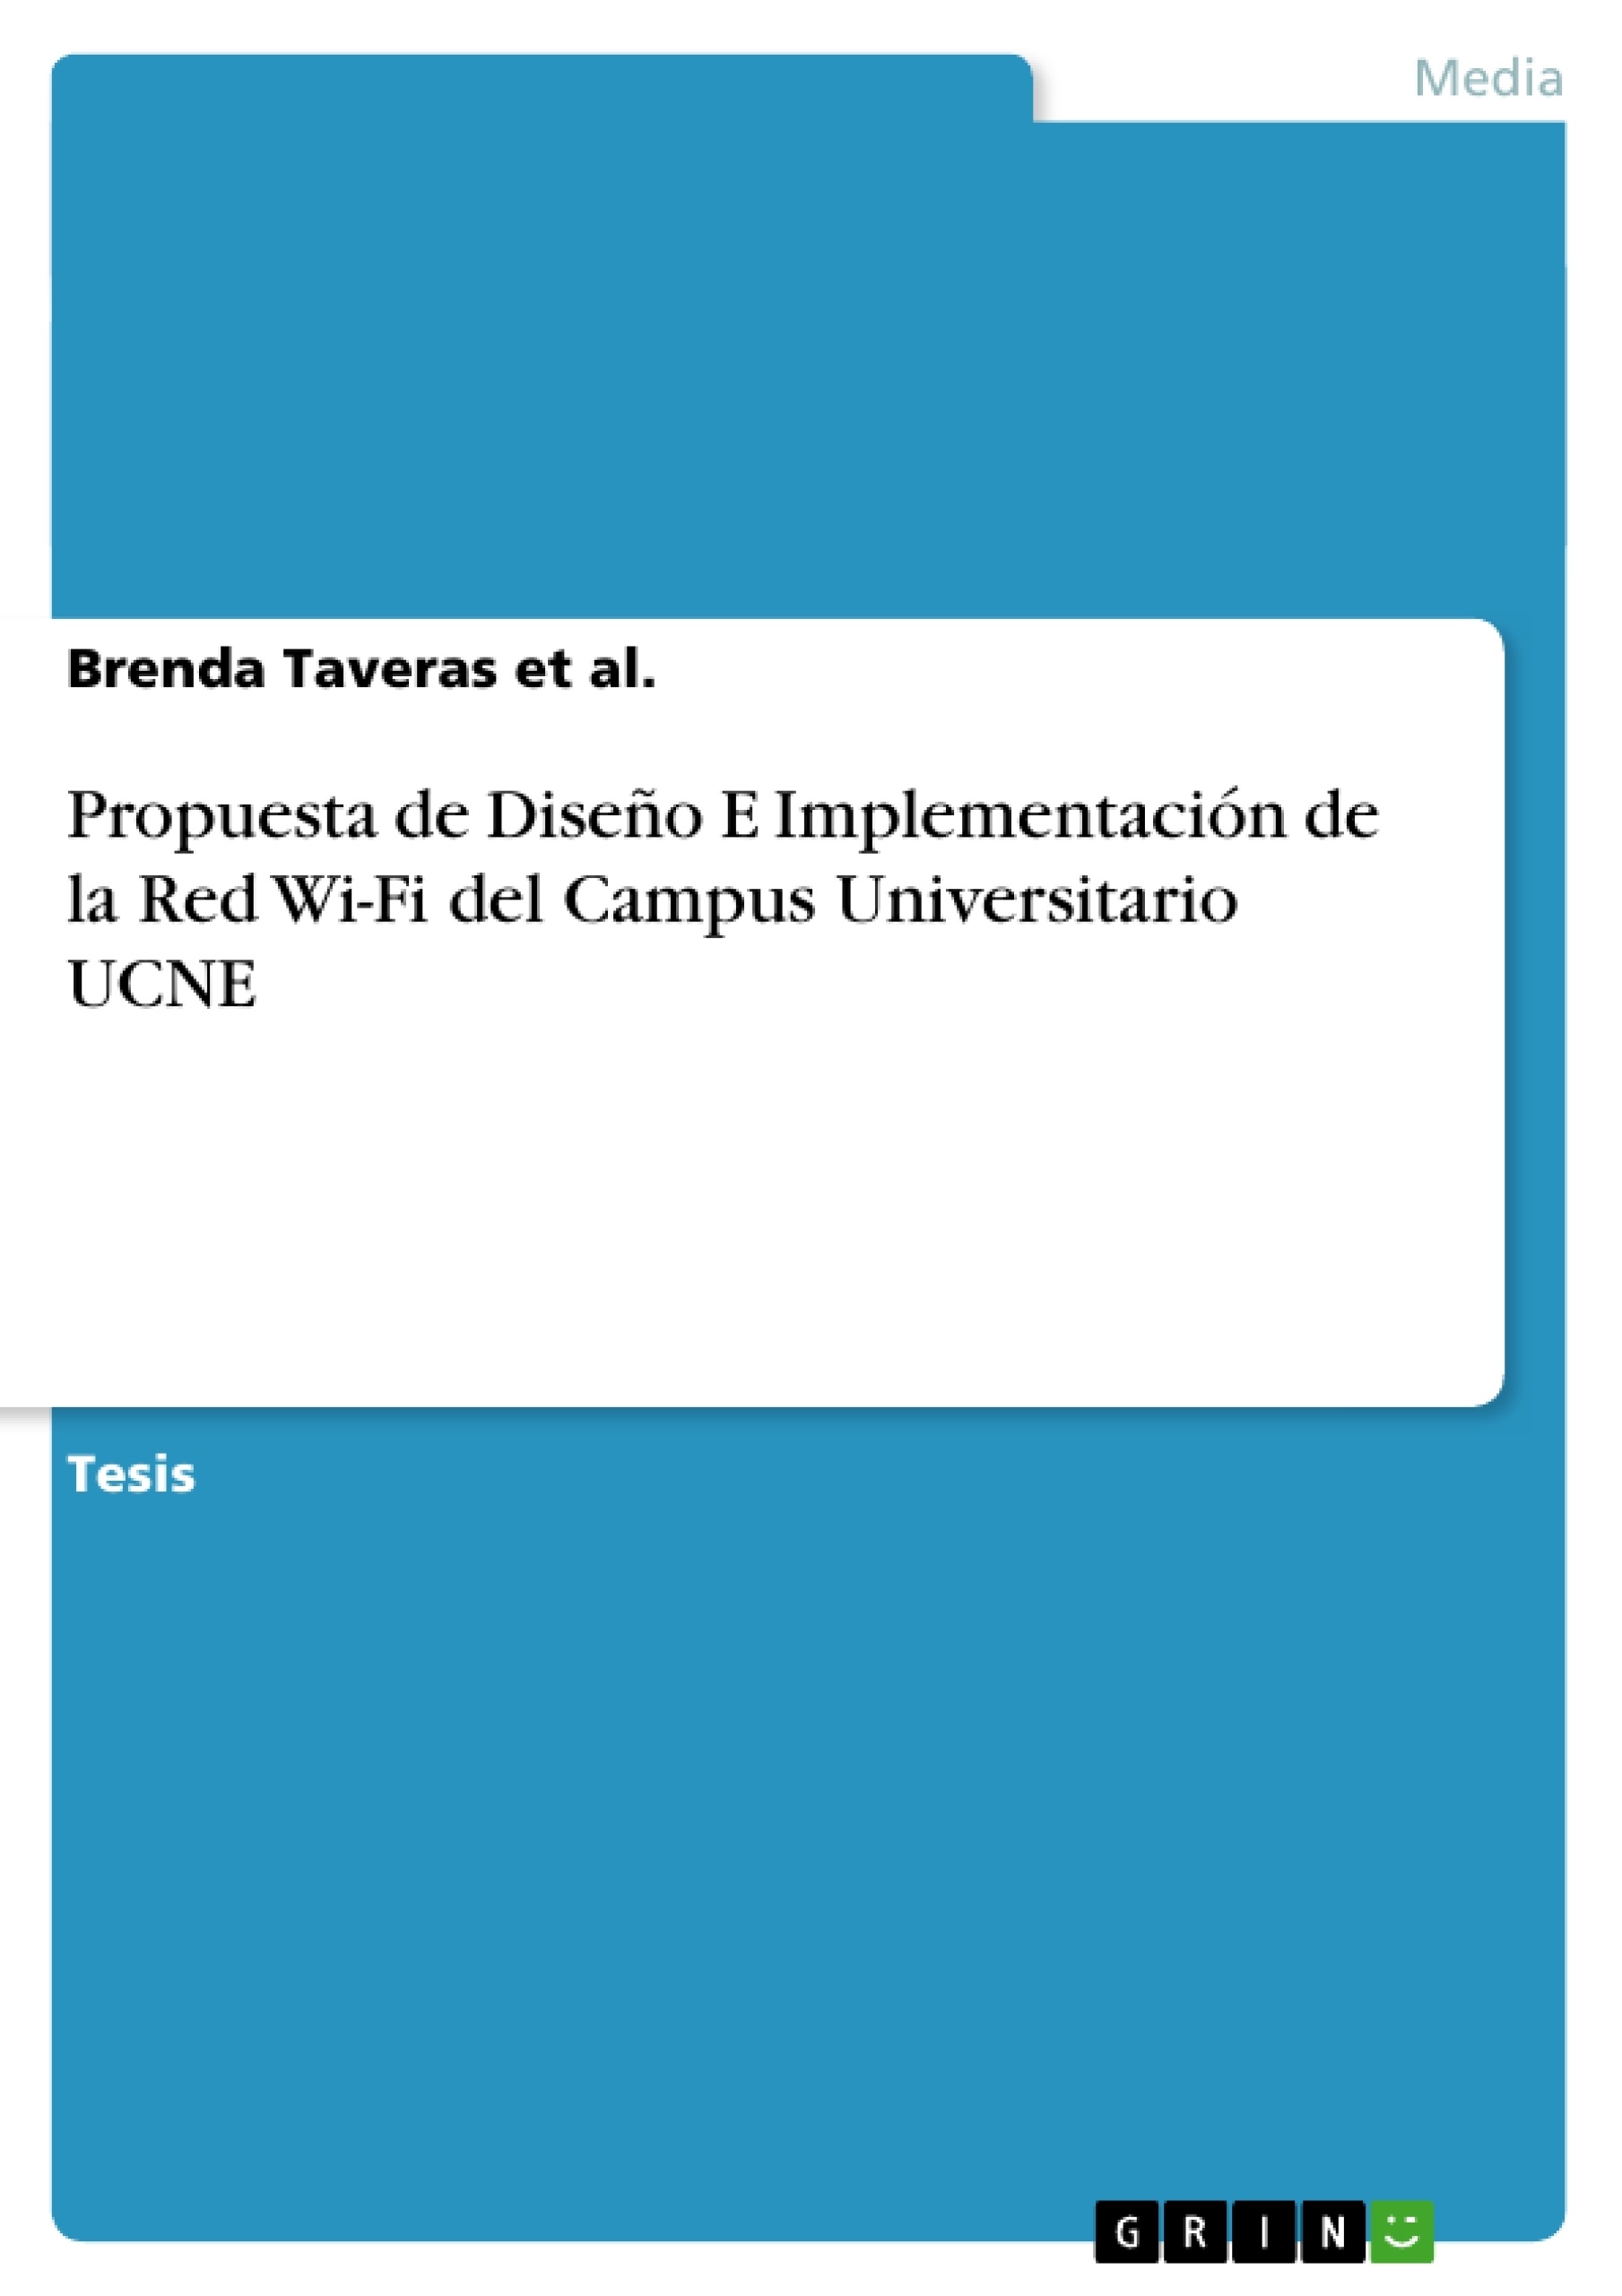 Título: Propuesta de Diseño E Implementación de la Red Wi-Fi del Campus Universitario UCNE